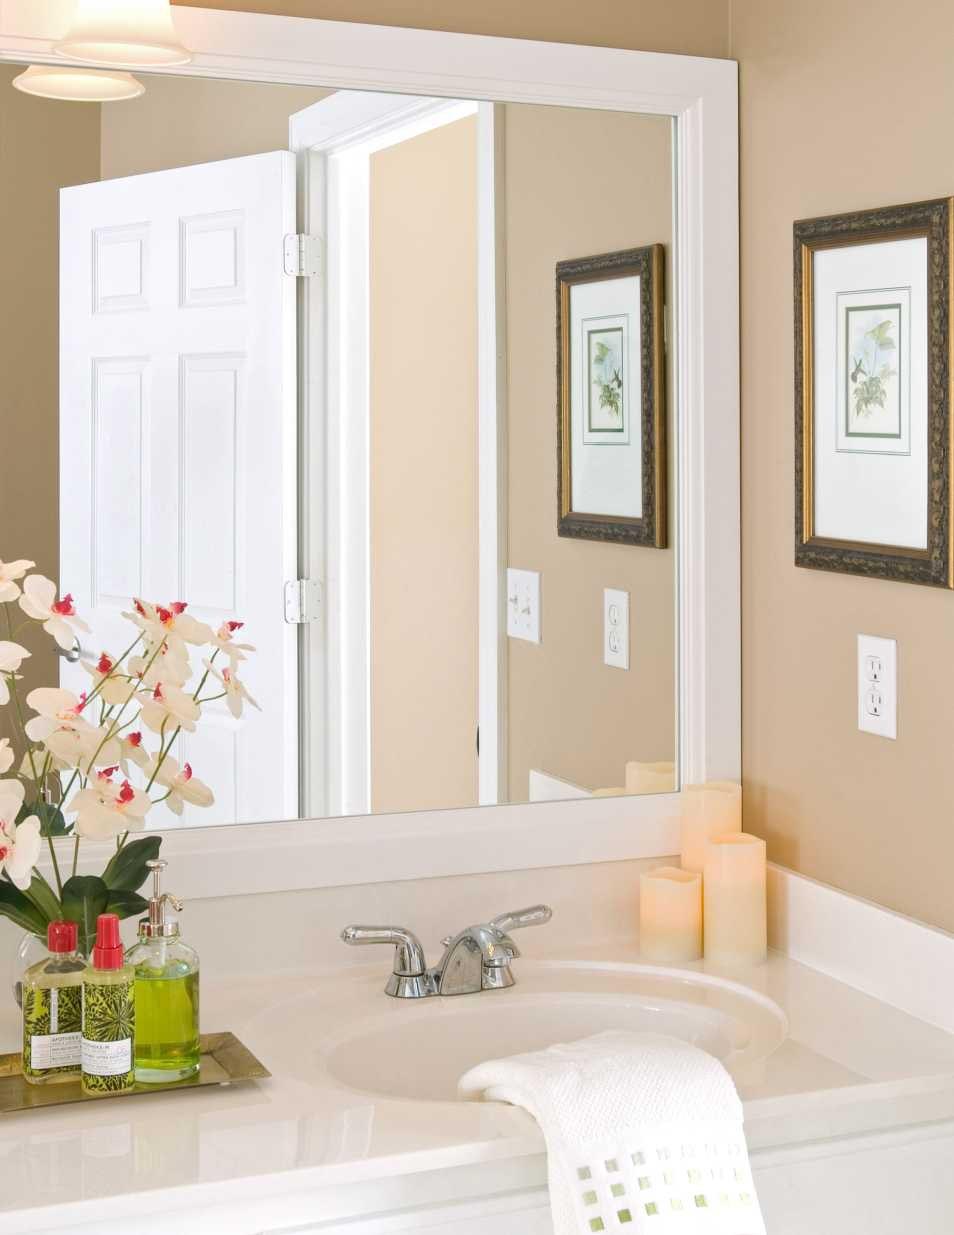 White Framed Bathroom Mirrors Best Decor Things